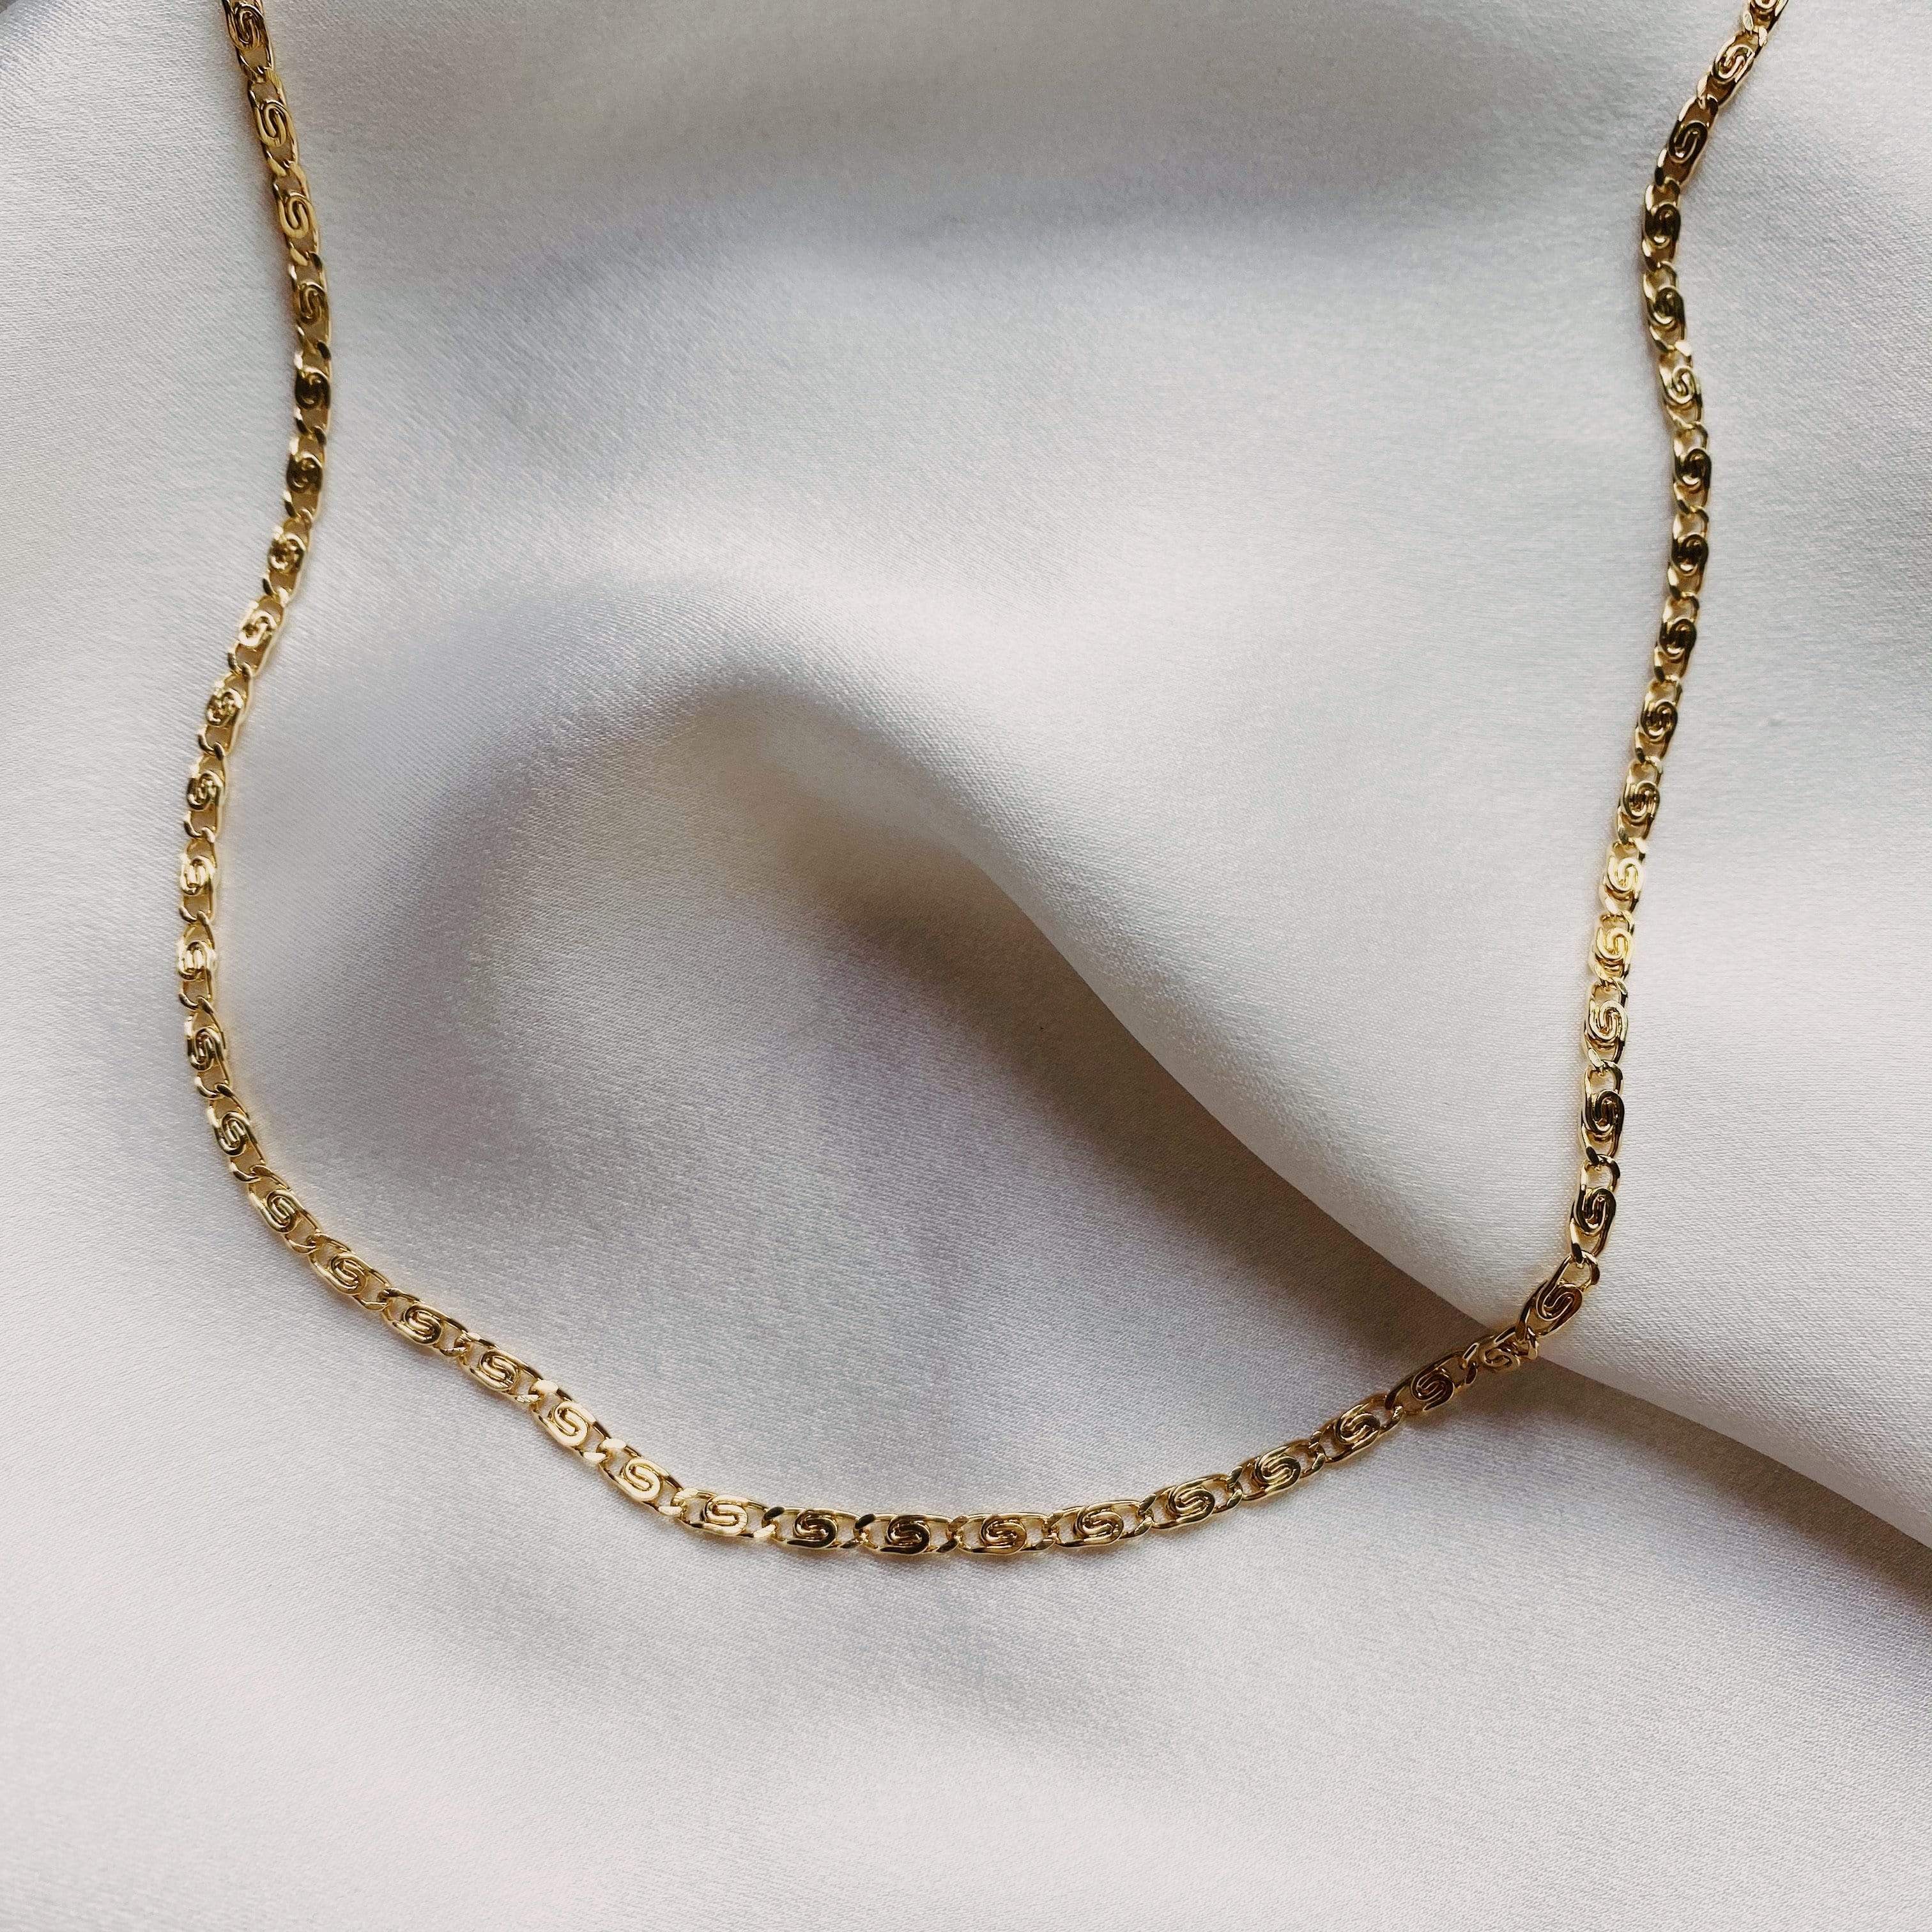 LE sensor necklace Shiloh Chain Necklace 16”